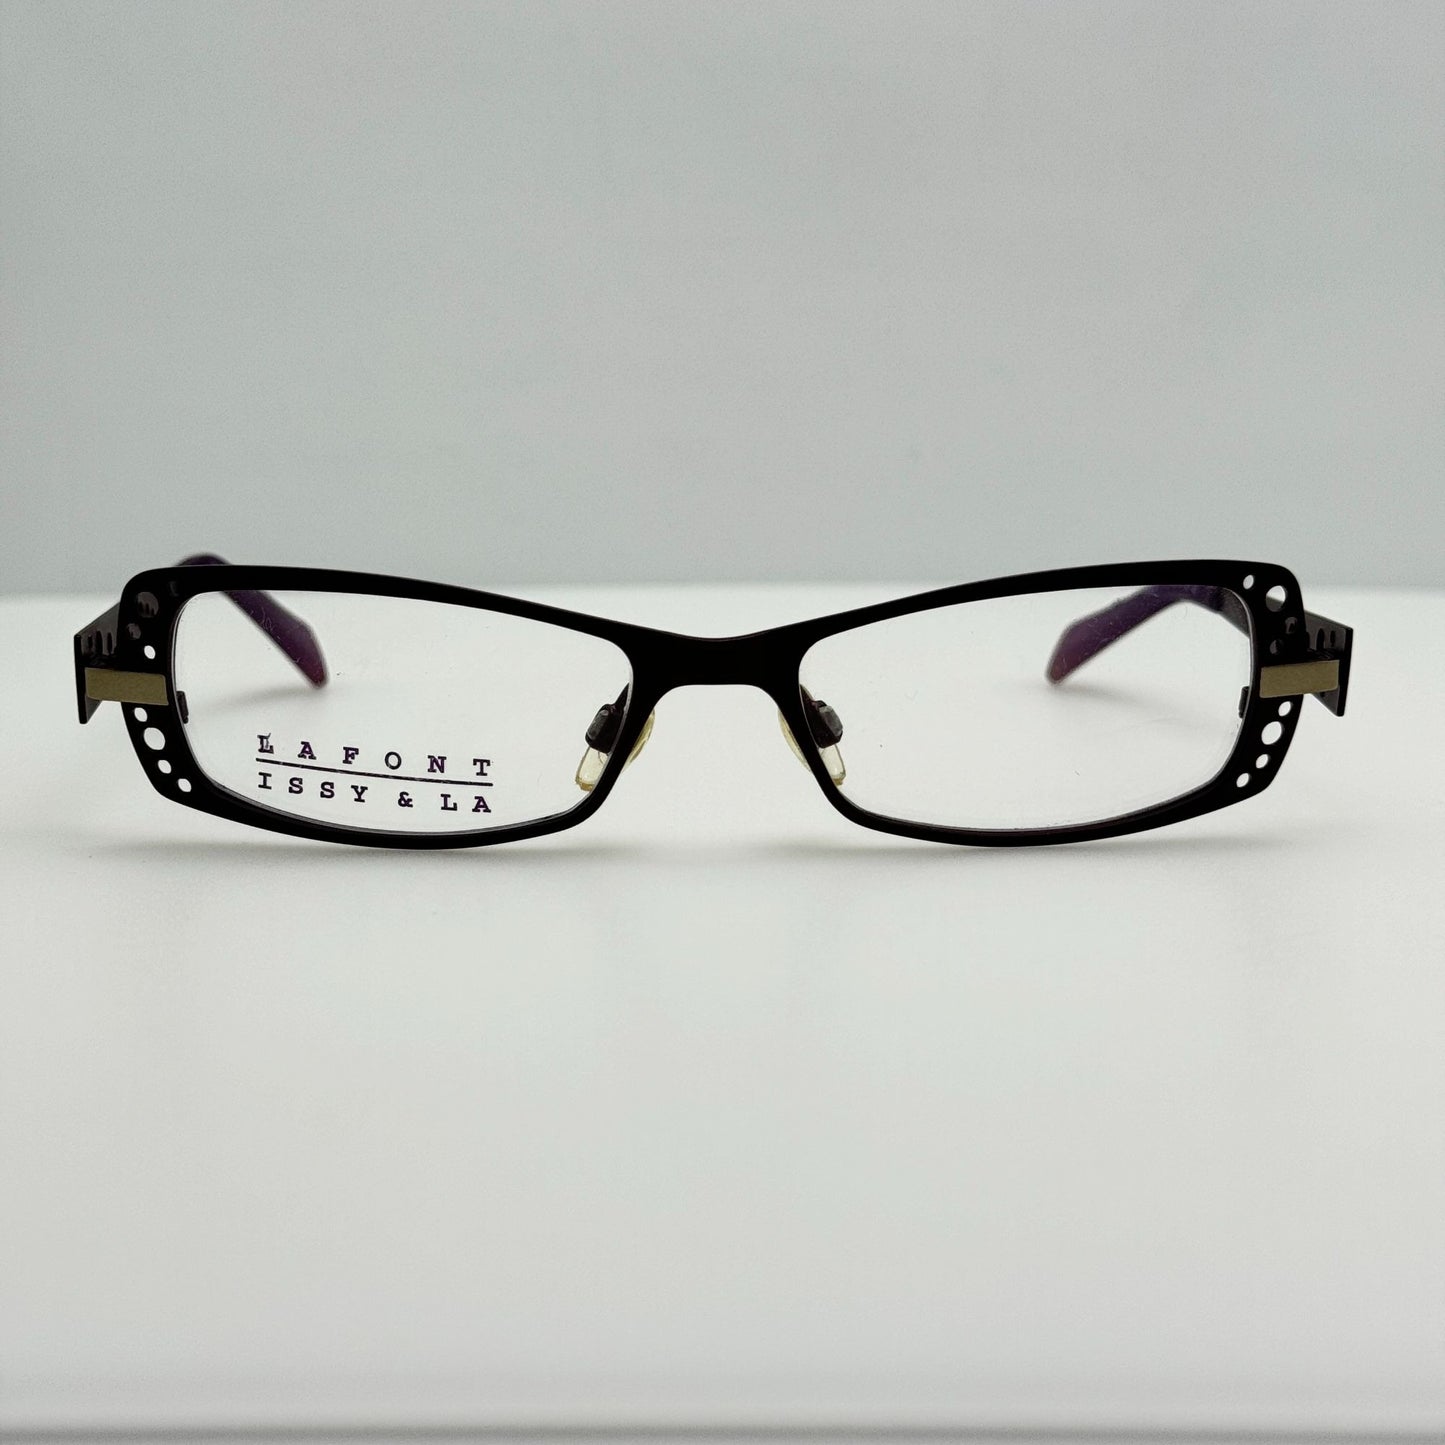 Jean Lafont Eyeglasses Eye Glasses Frames Emilie 766 France 50-16-125